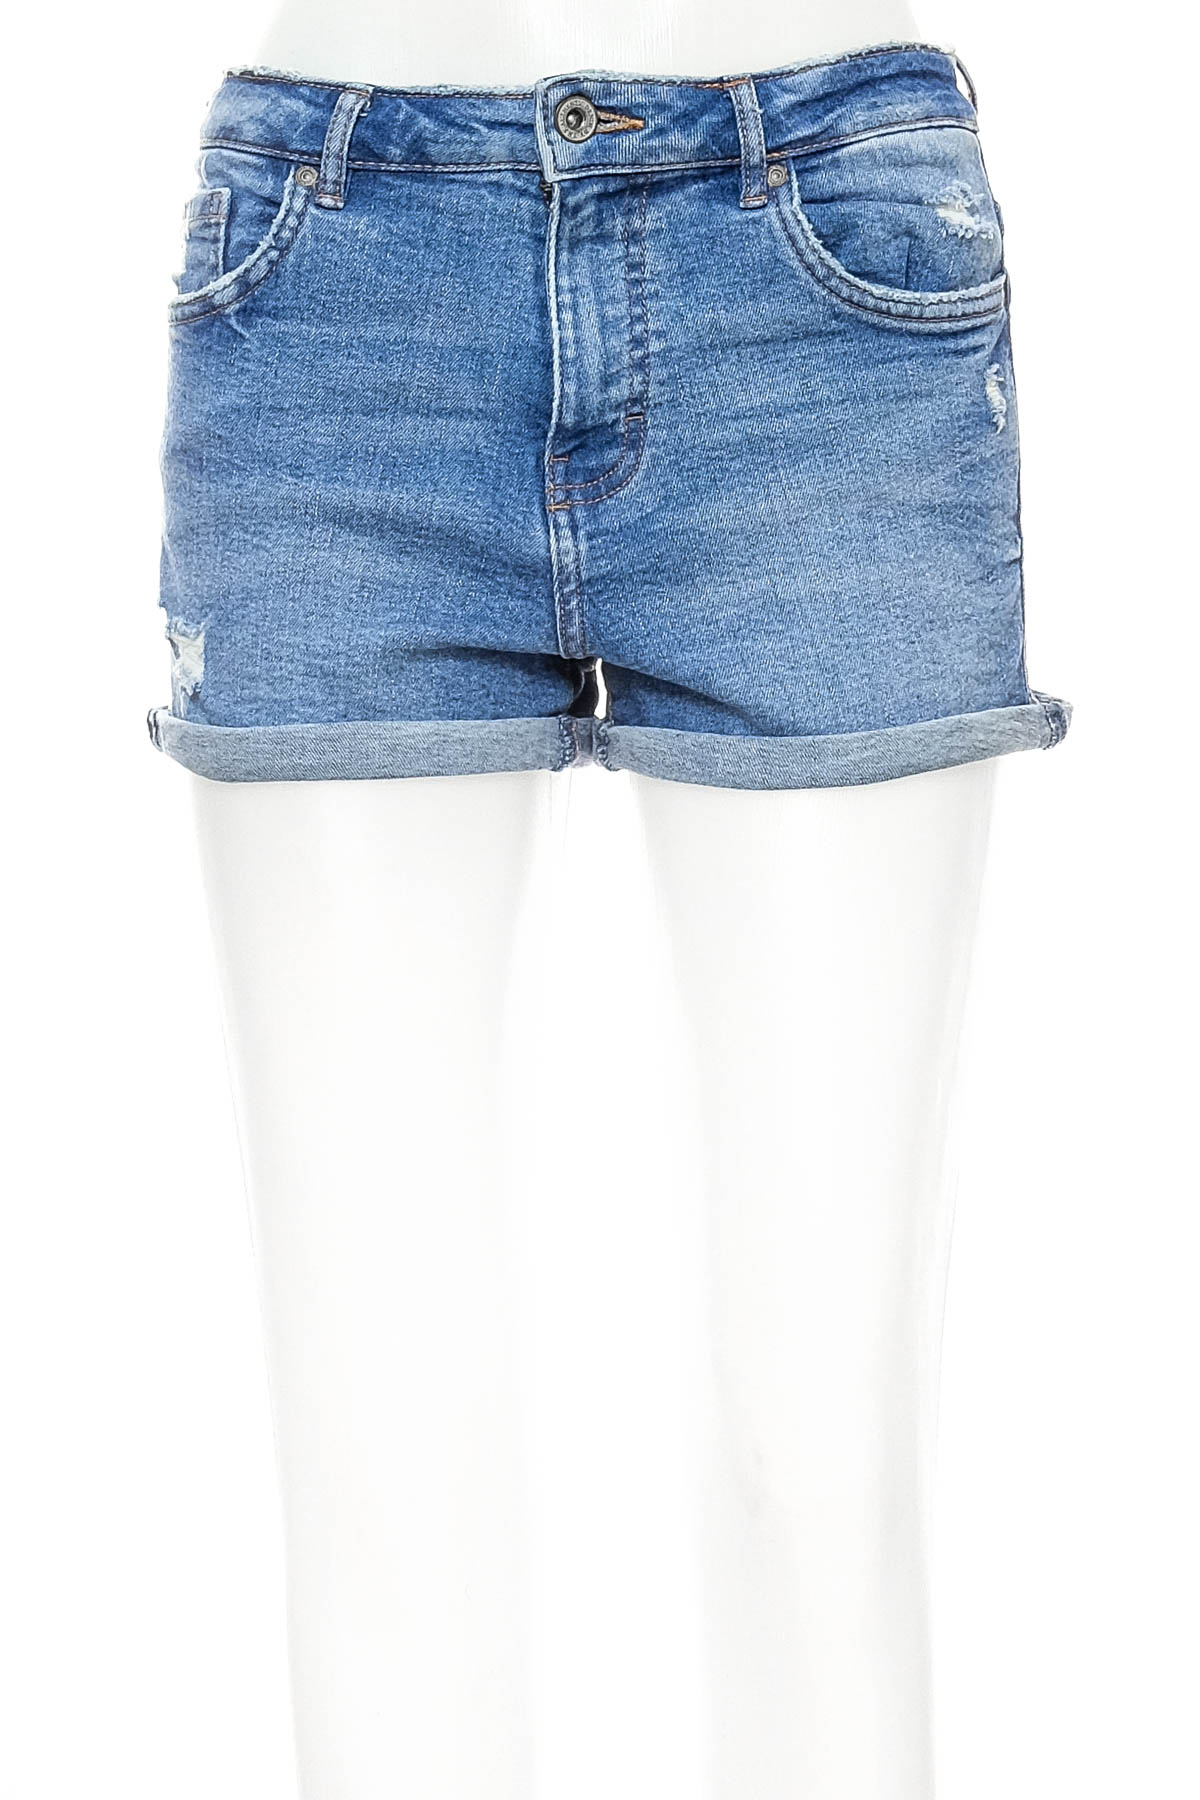 Female shorts - ZARA AUTHENTIC DENIM BY TRF - 0